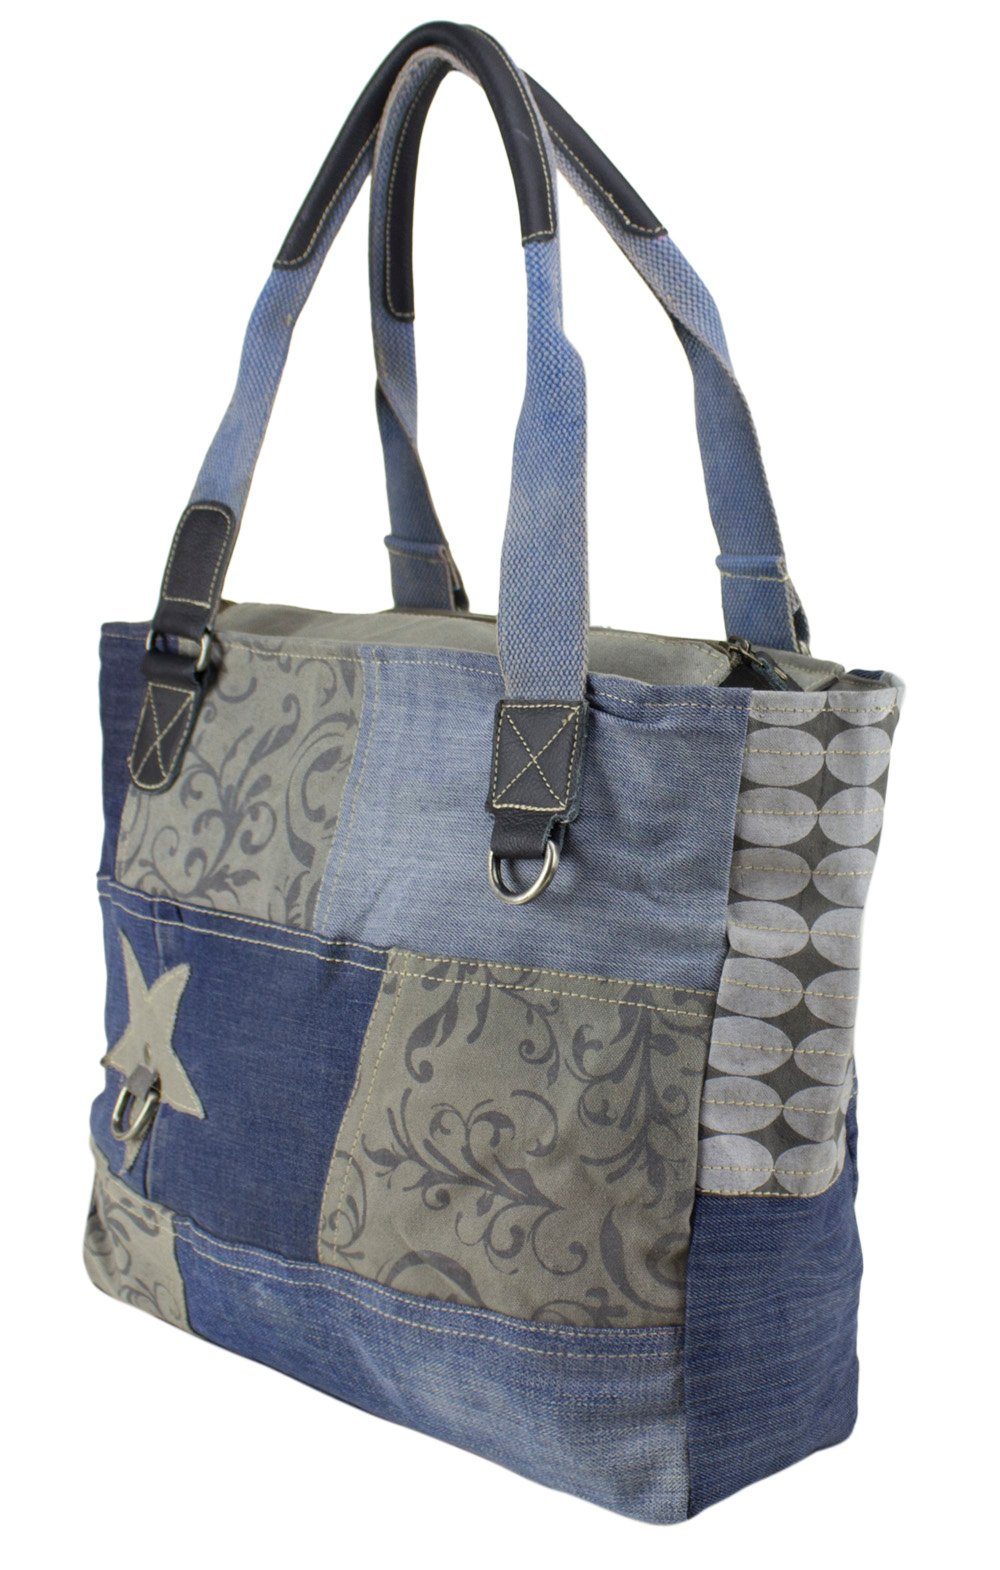 Jeans Materialien und Große Handtasche. 52226, recycelte Damen Schultertasche grau Tasche recycelte Sunsa Handtasche aus Canvas.